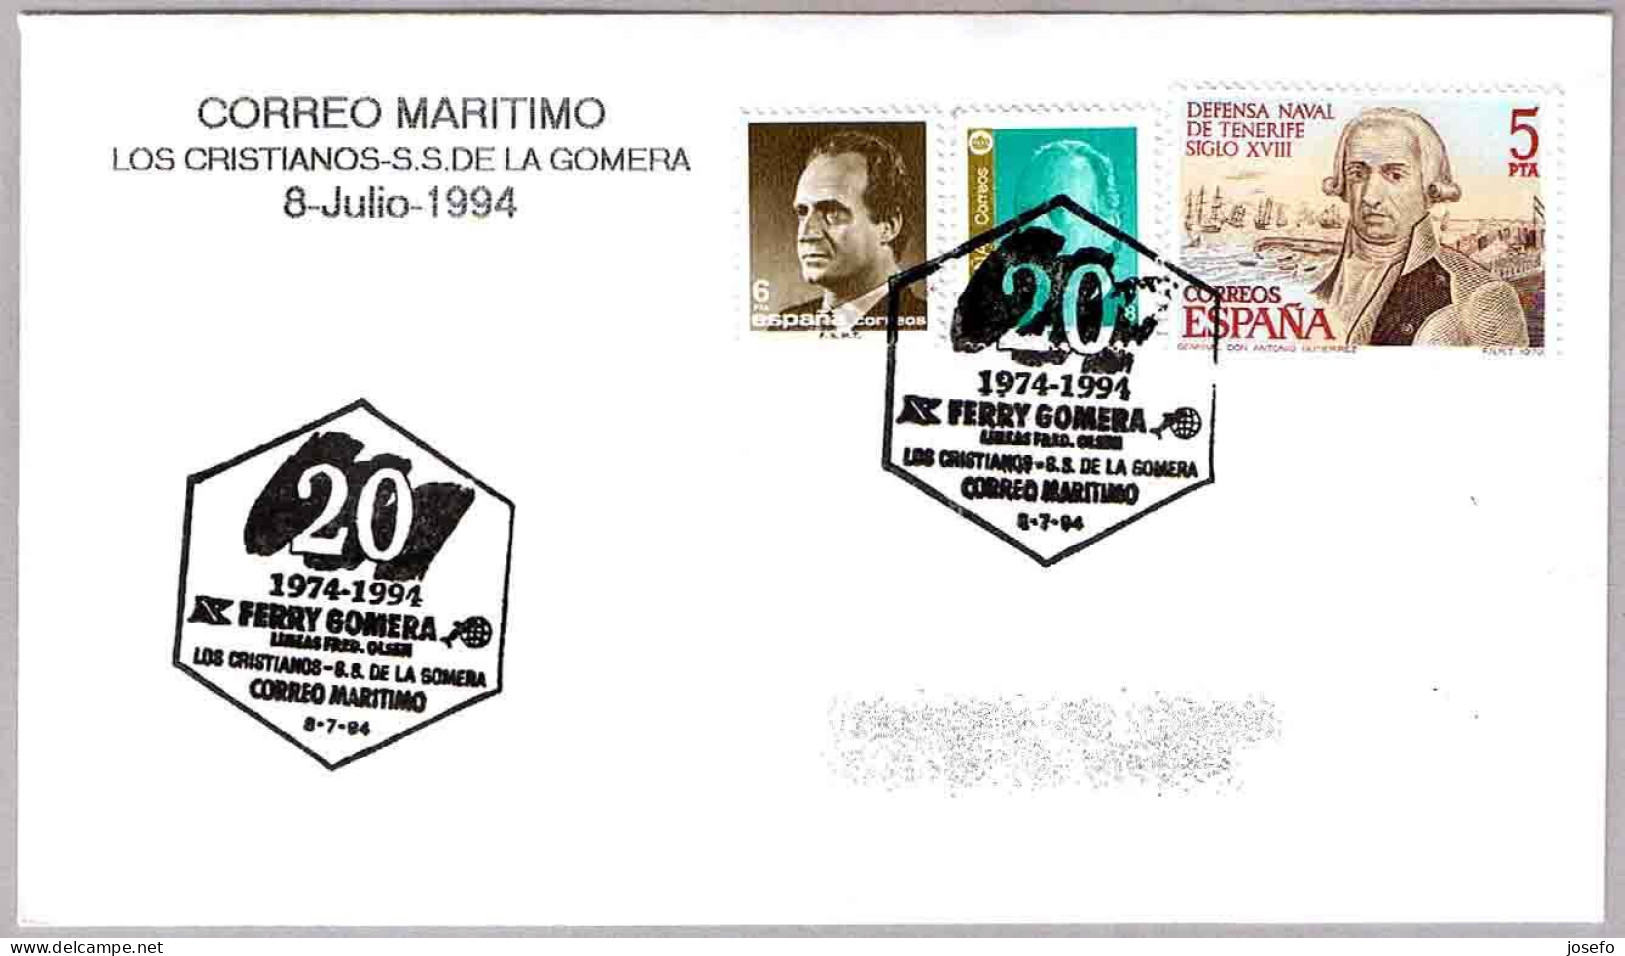 CORREO MARITIMO Los Cristianos - S.S.de La Gomera. FERRY GOMERA. 1994. Canarias - Correo Postal